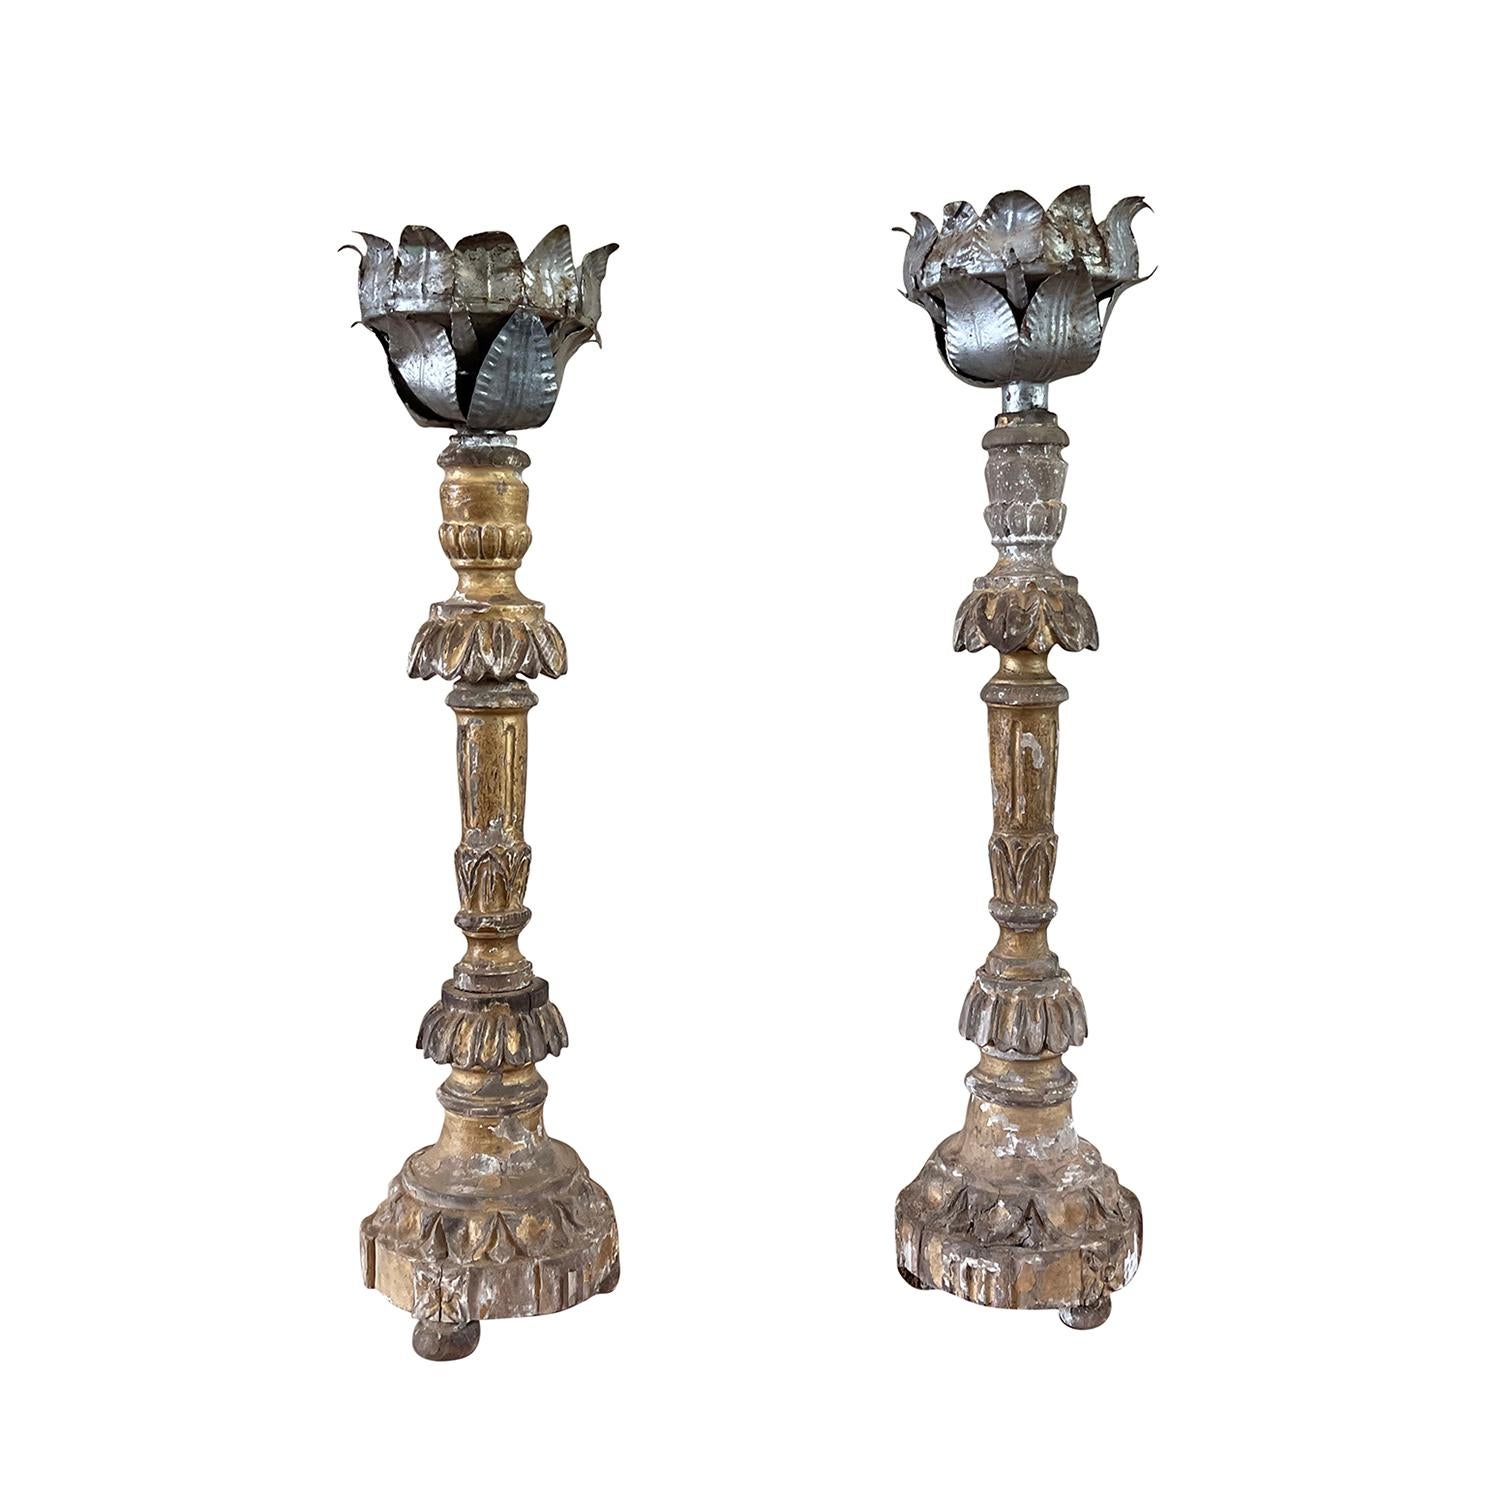 Ein antikes französisches Paar Kerzenhalter aus dem frühen 19. Jahrhundert auf einem dreibeinigen Sockel, geschnitzt aus Kiefernholz mit Akanthusblatt-Dekor. Original polychrome Silber-Gold-Patina, in gutem Zustand. Gekrönt von einem